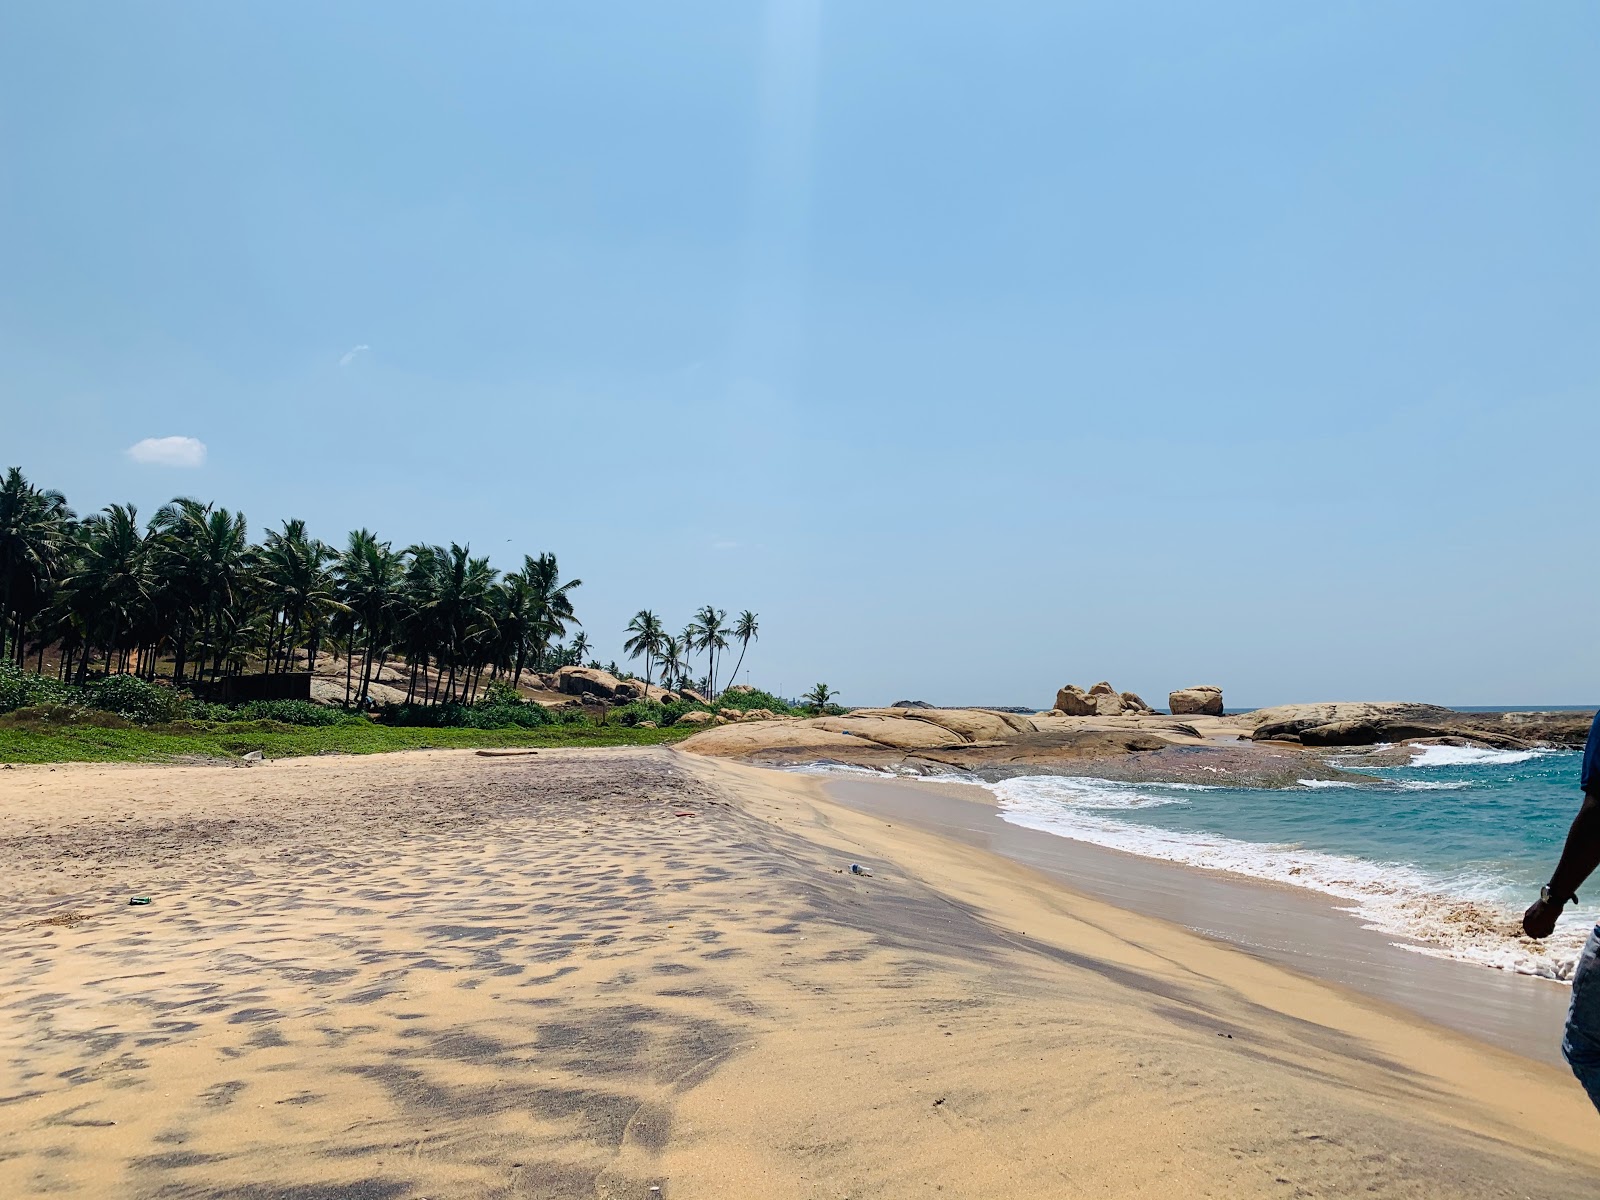 Fotografie cu Paraikal Beach - locul popular printre cunoscătorii de relaxare